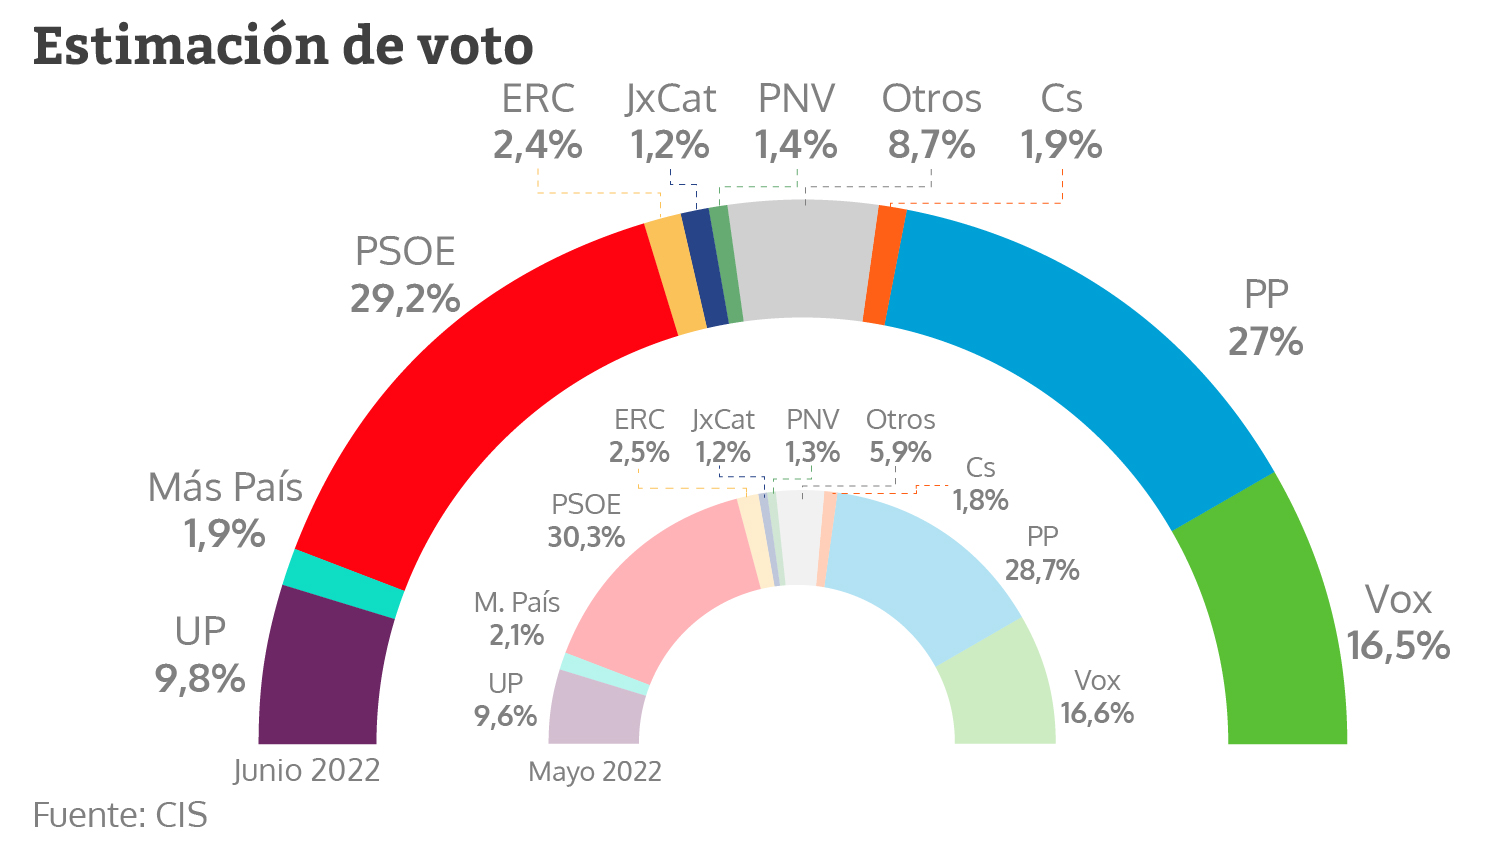 Estimación de voto en junio de 2022 según el CIS